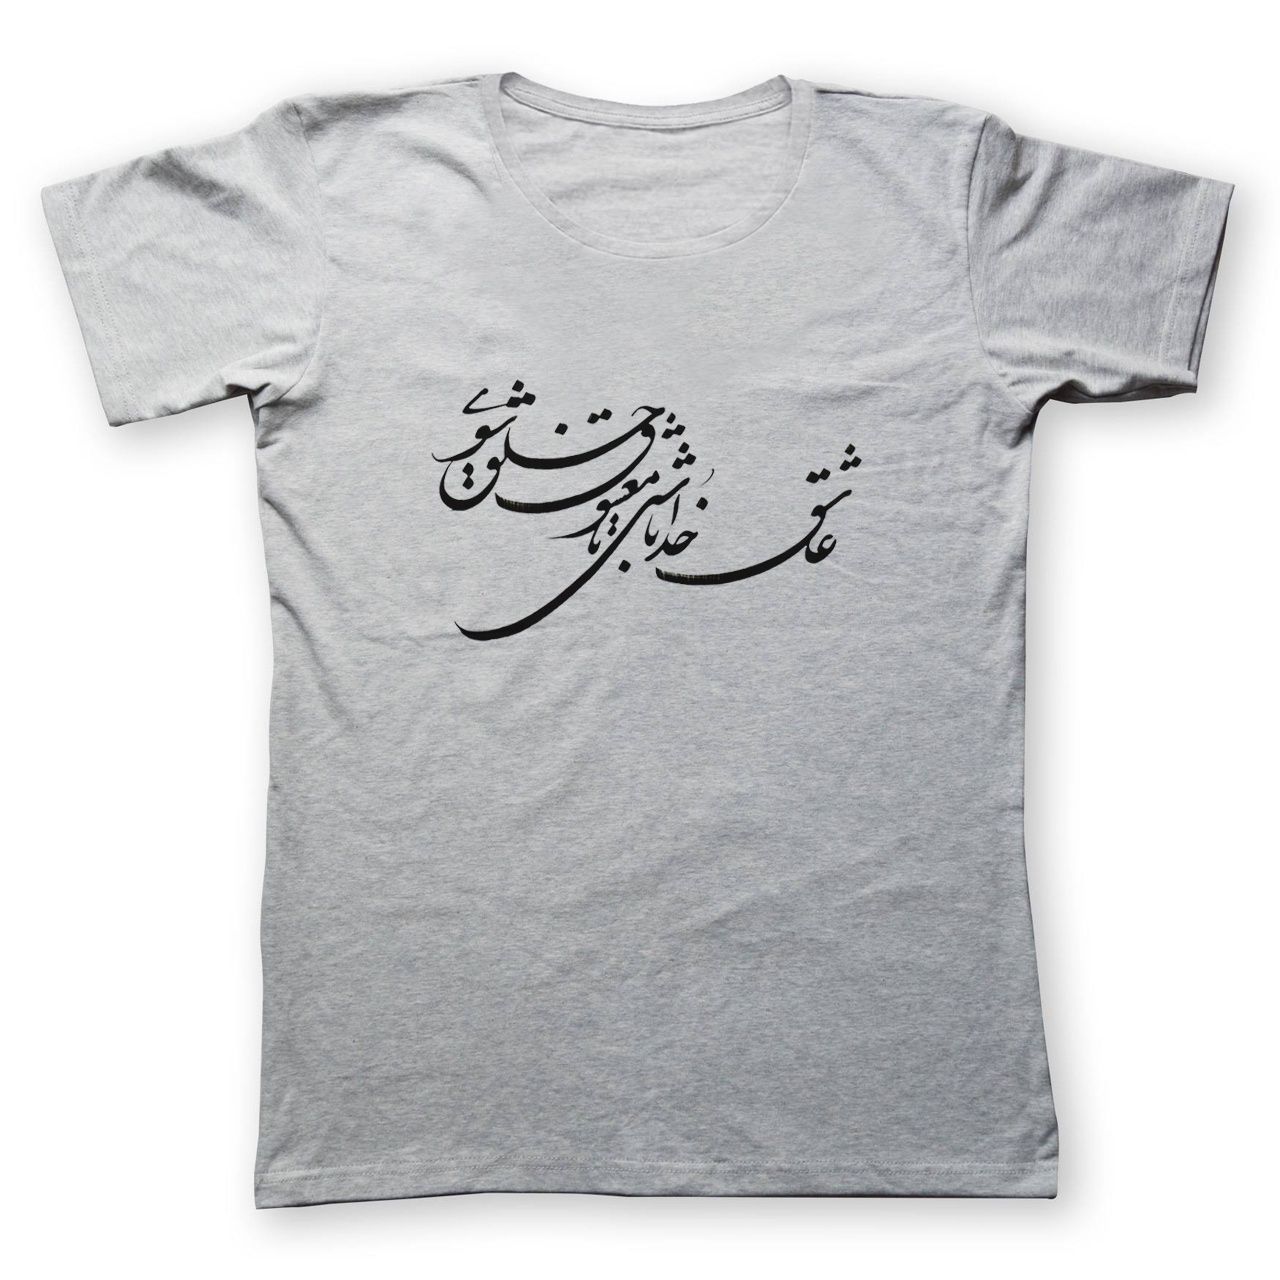 تی شرت مردانه به رسم طرح عاشق خدا کد 2229 -  - 1